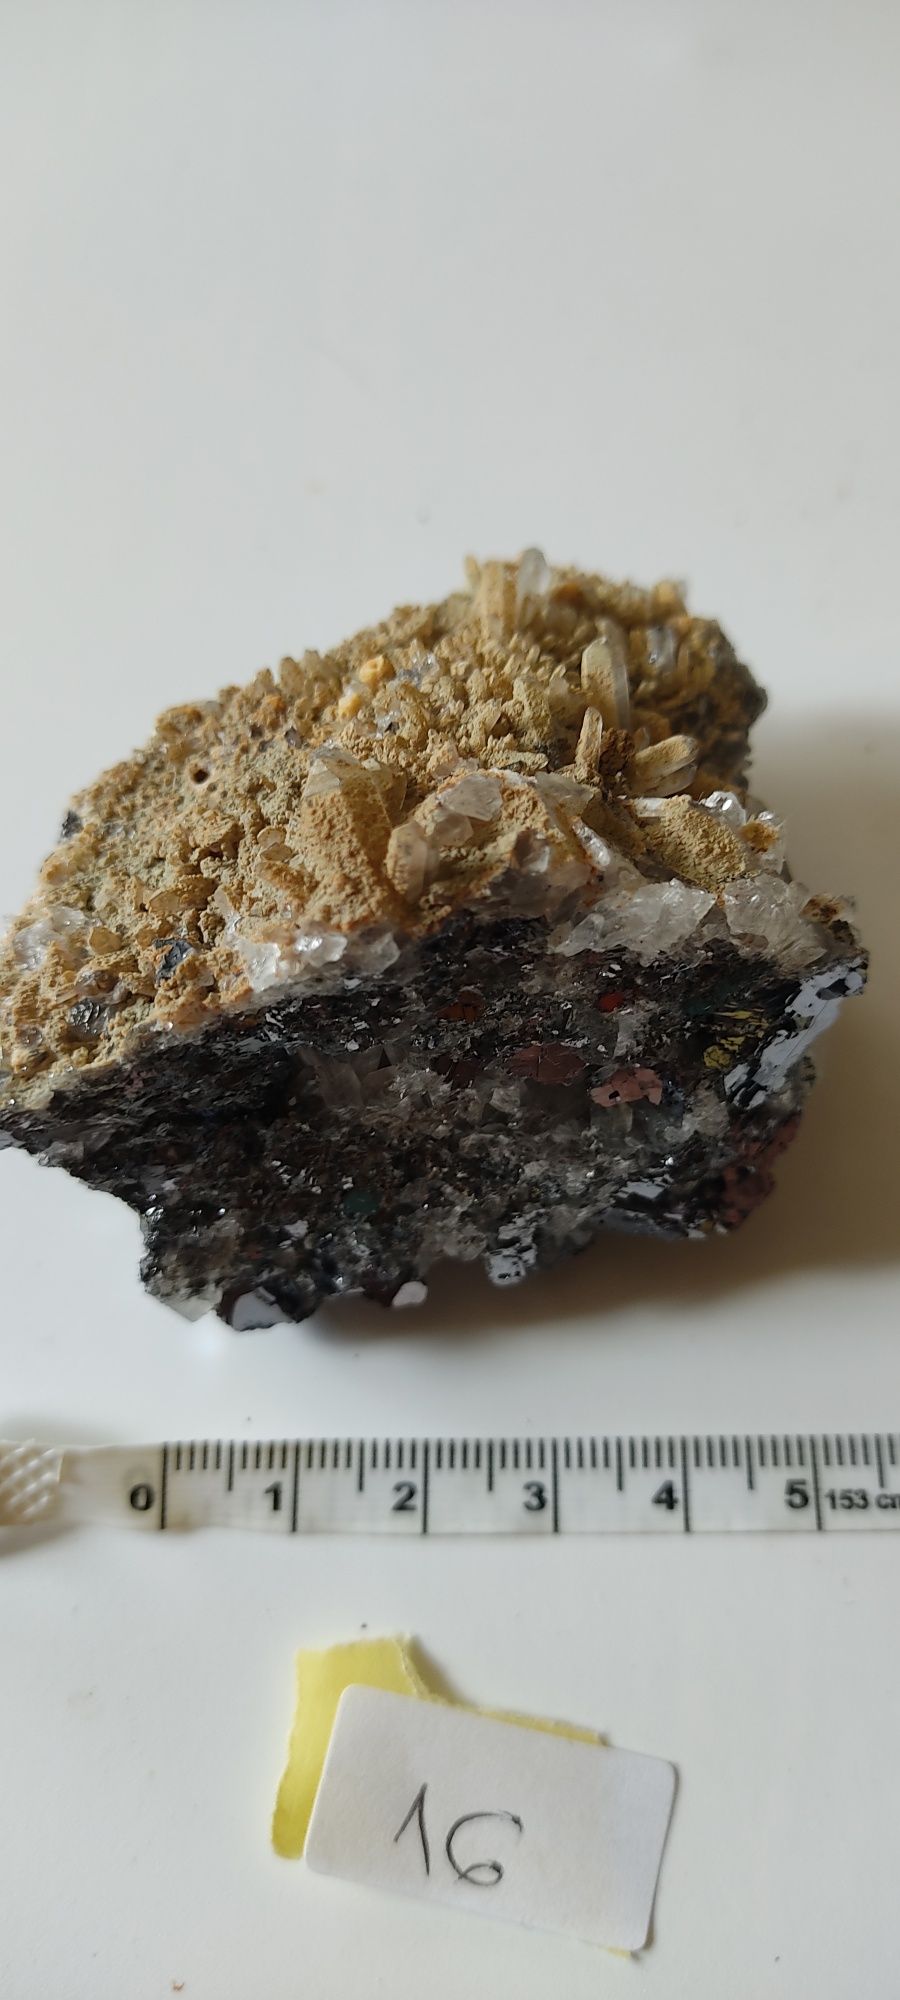 Flori de mina minerale roci pirită cristale quartz